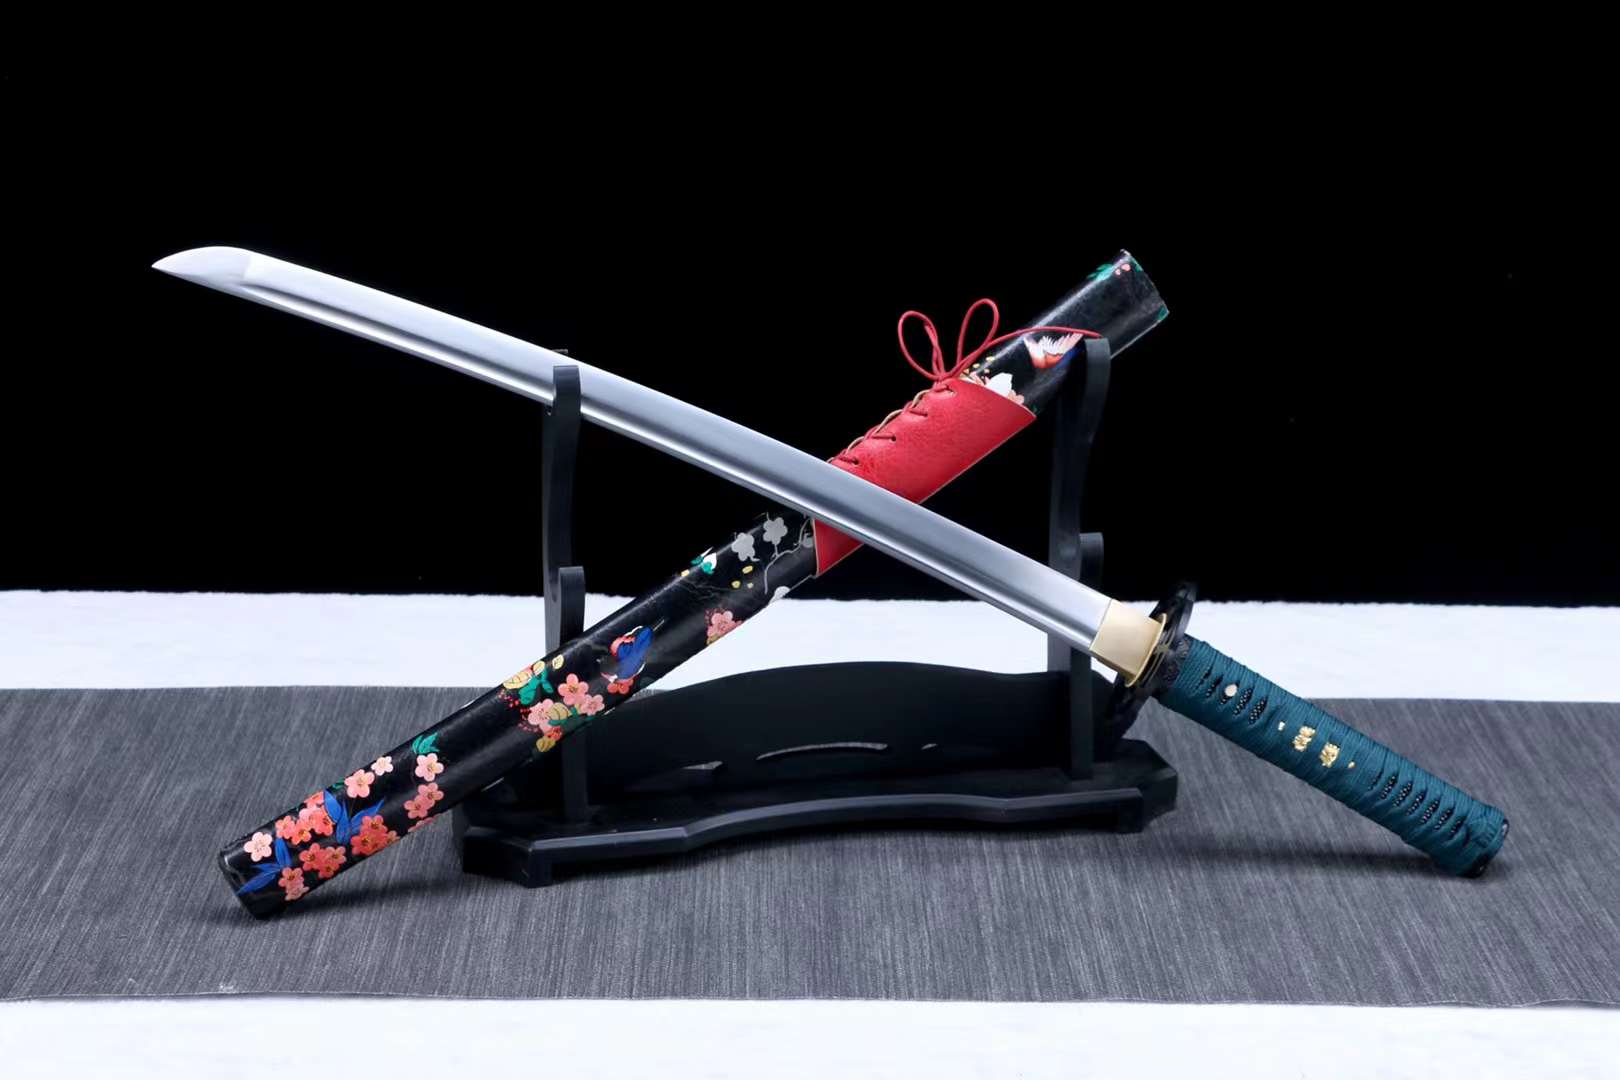 1095 steel sword set,sword steel katana sword,samurai sword,Japanese handmade samurai sword loveyitadj